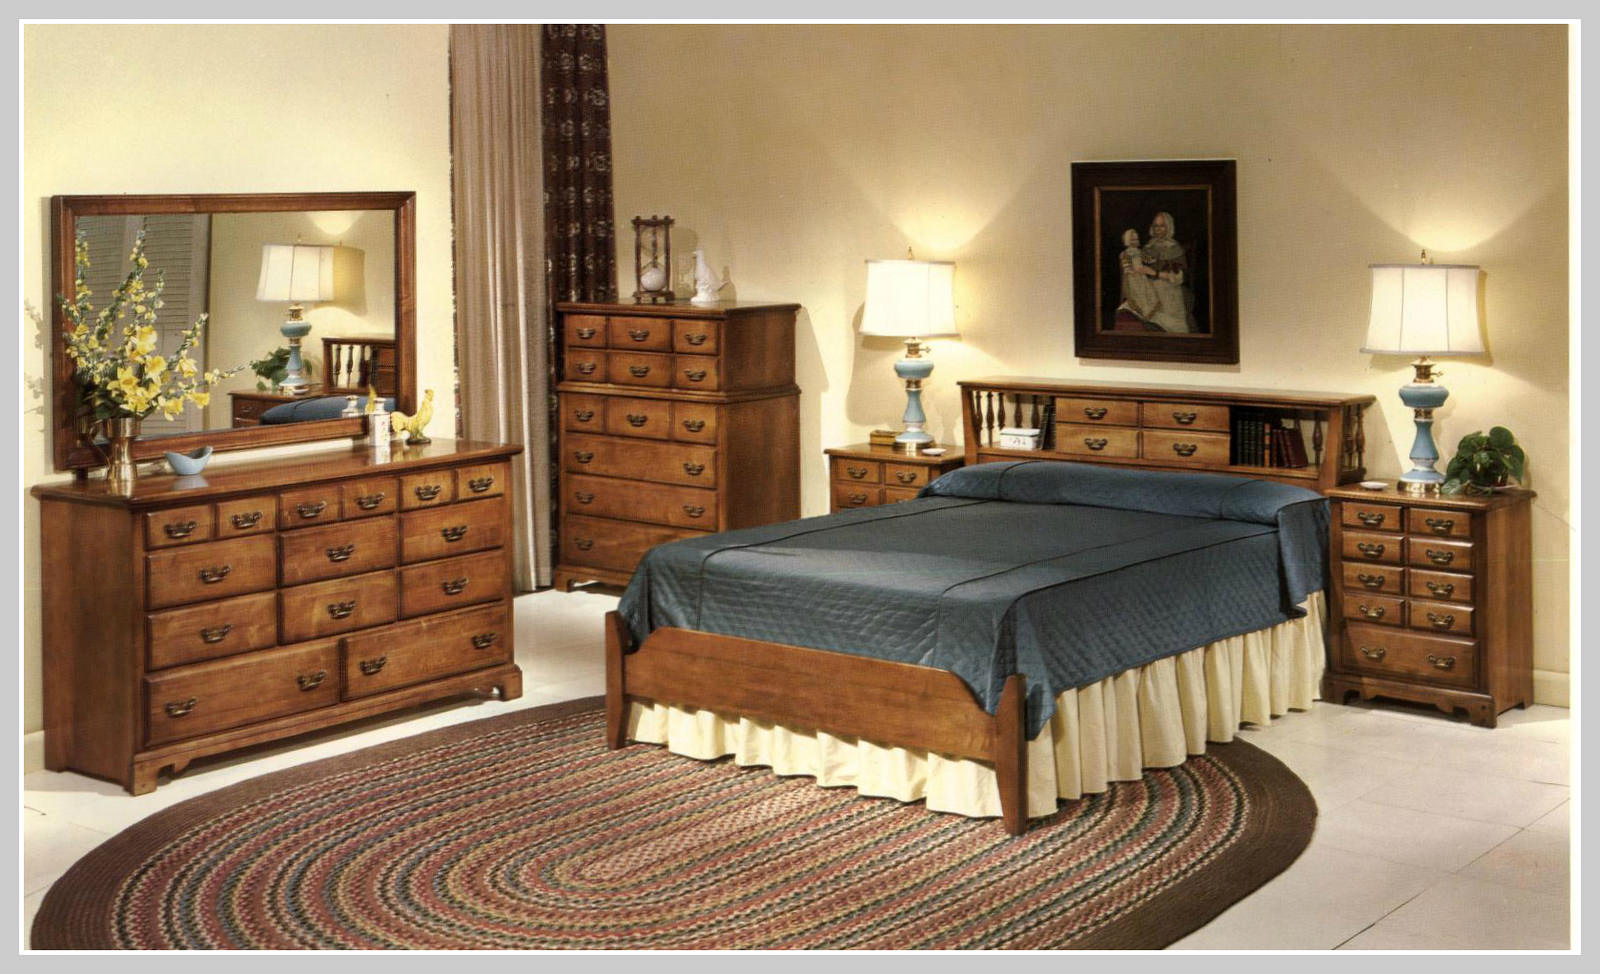 1960s bedroom furniture uk